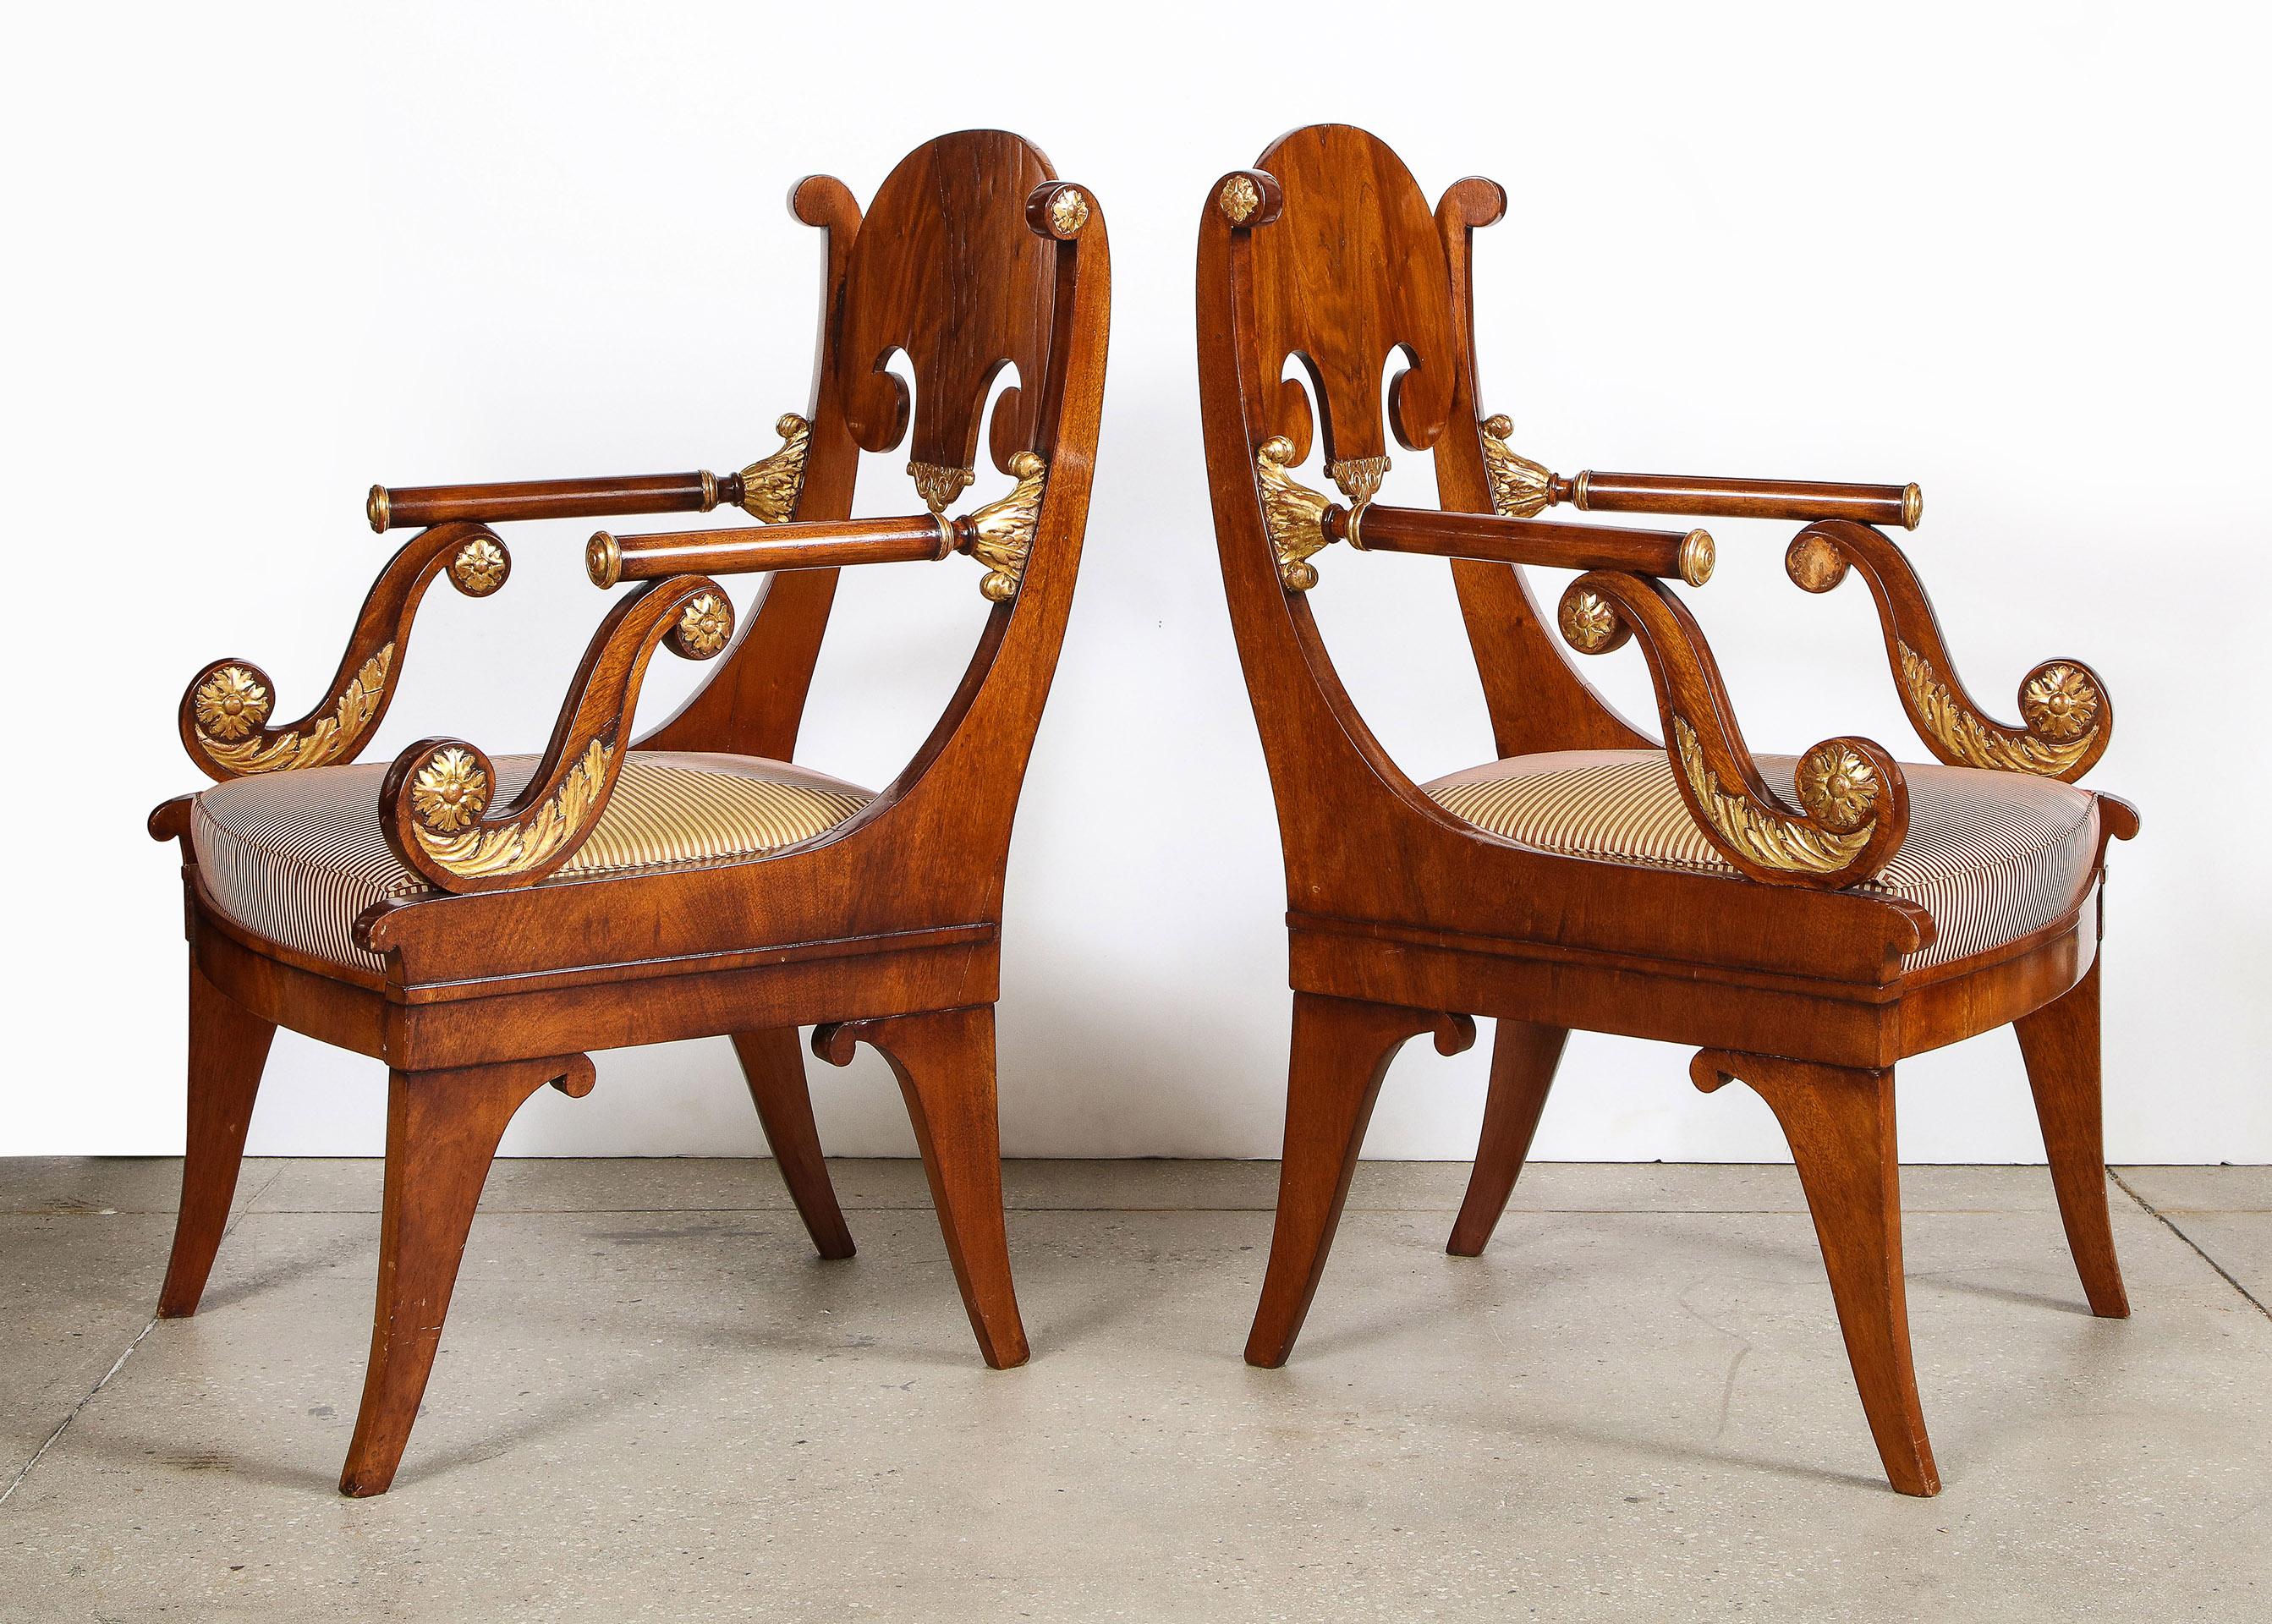 Paar russische neoklassizistische paketvergoldete Mahagoni-Sessel

Jeder Sessel wurde während der Kaiserzeit in Russland hergestellt. Der mahagonifurnierte Rahmen ist mit vergoldeten Details versehen. Mit ungewöhnlichen, röhrenförmigen